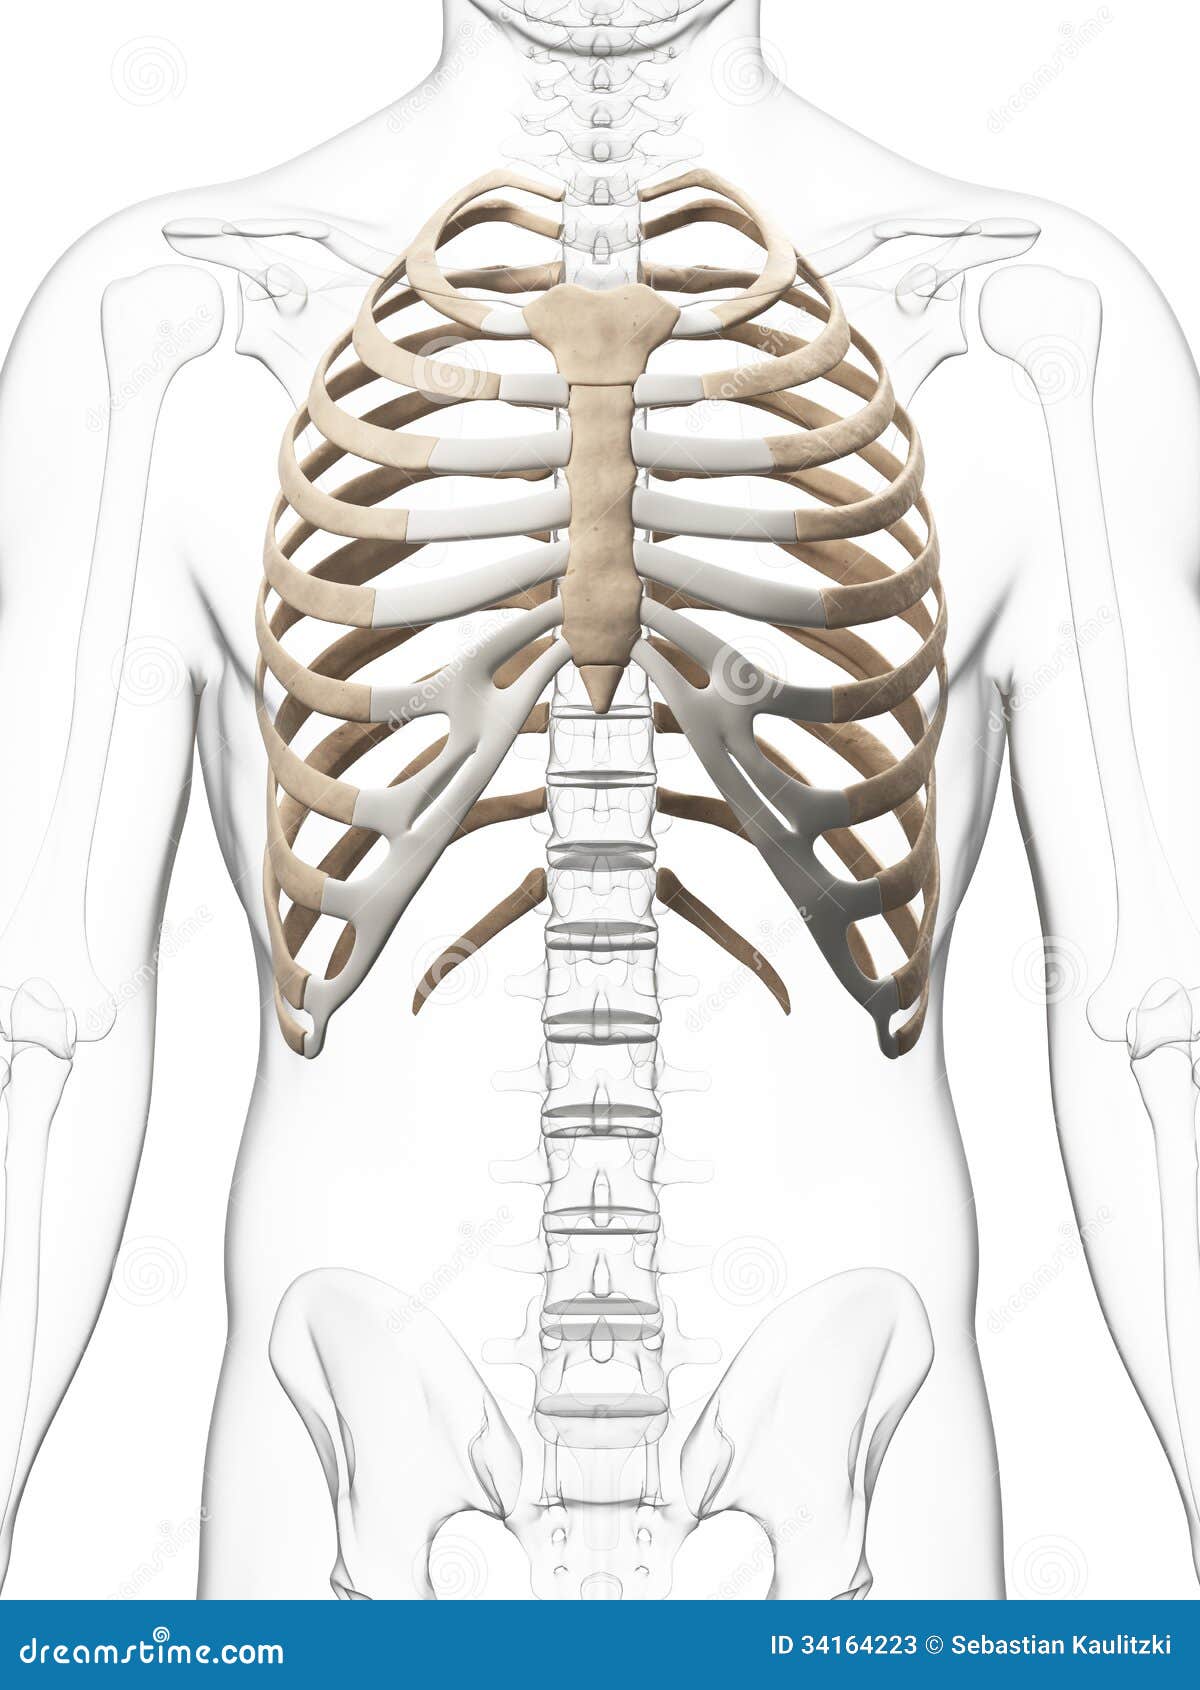 skeletal thorax